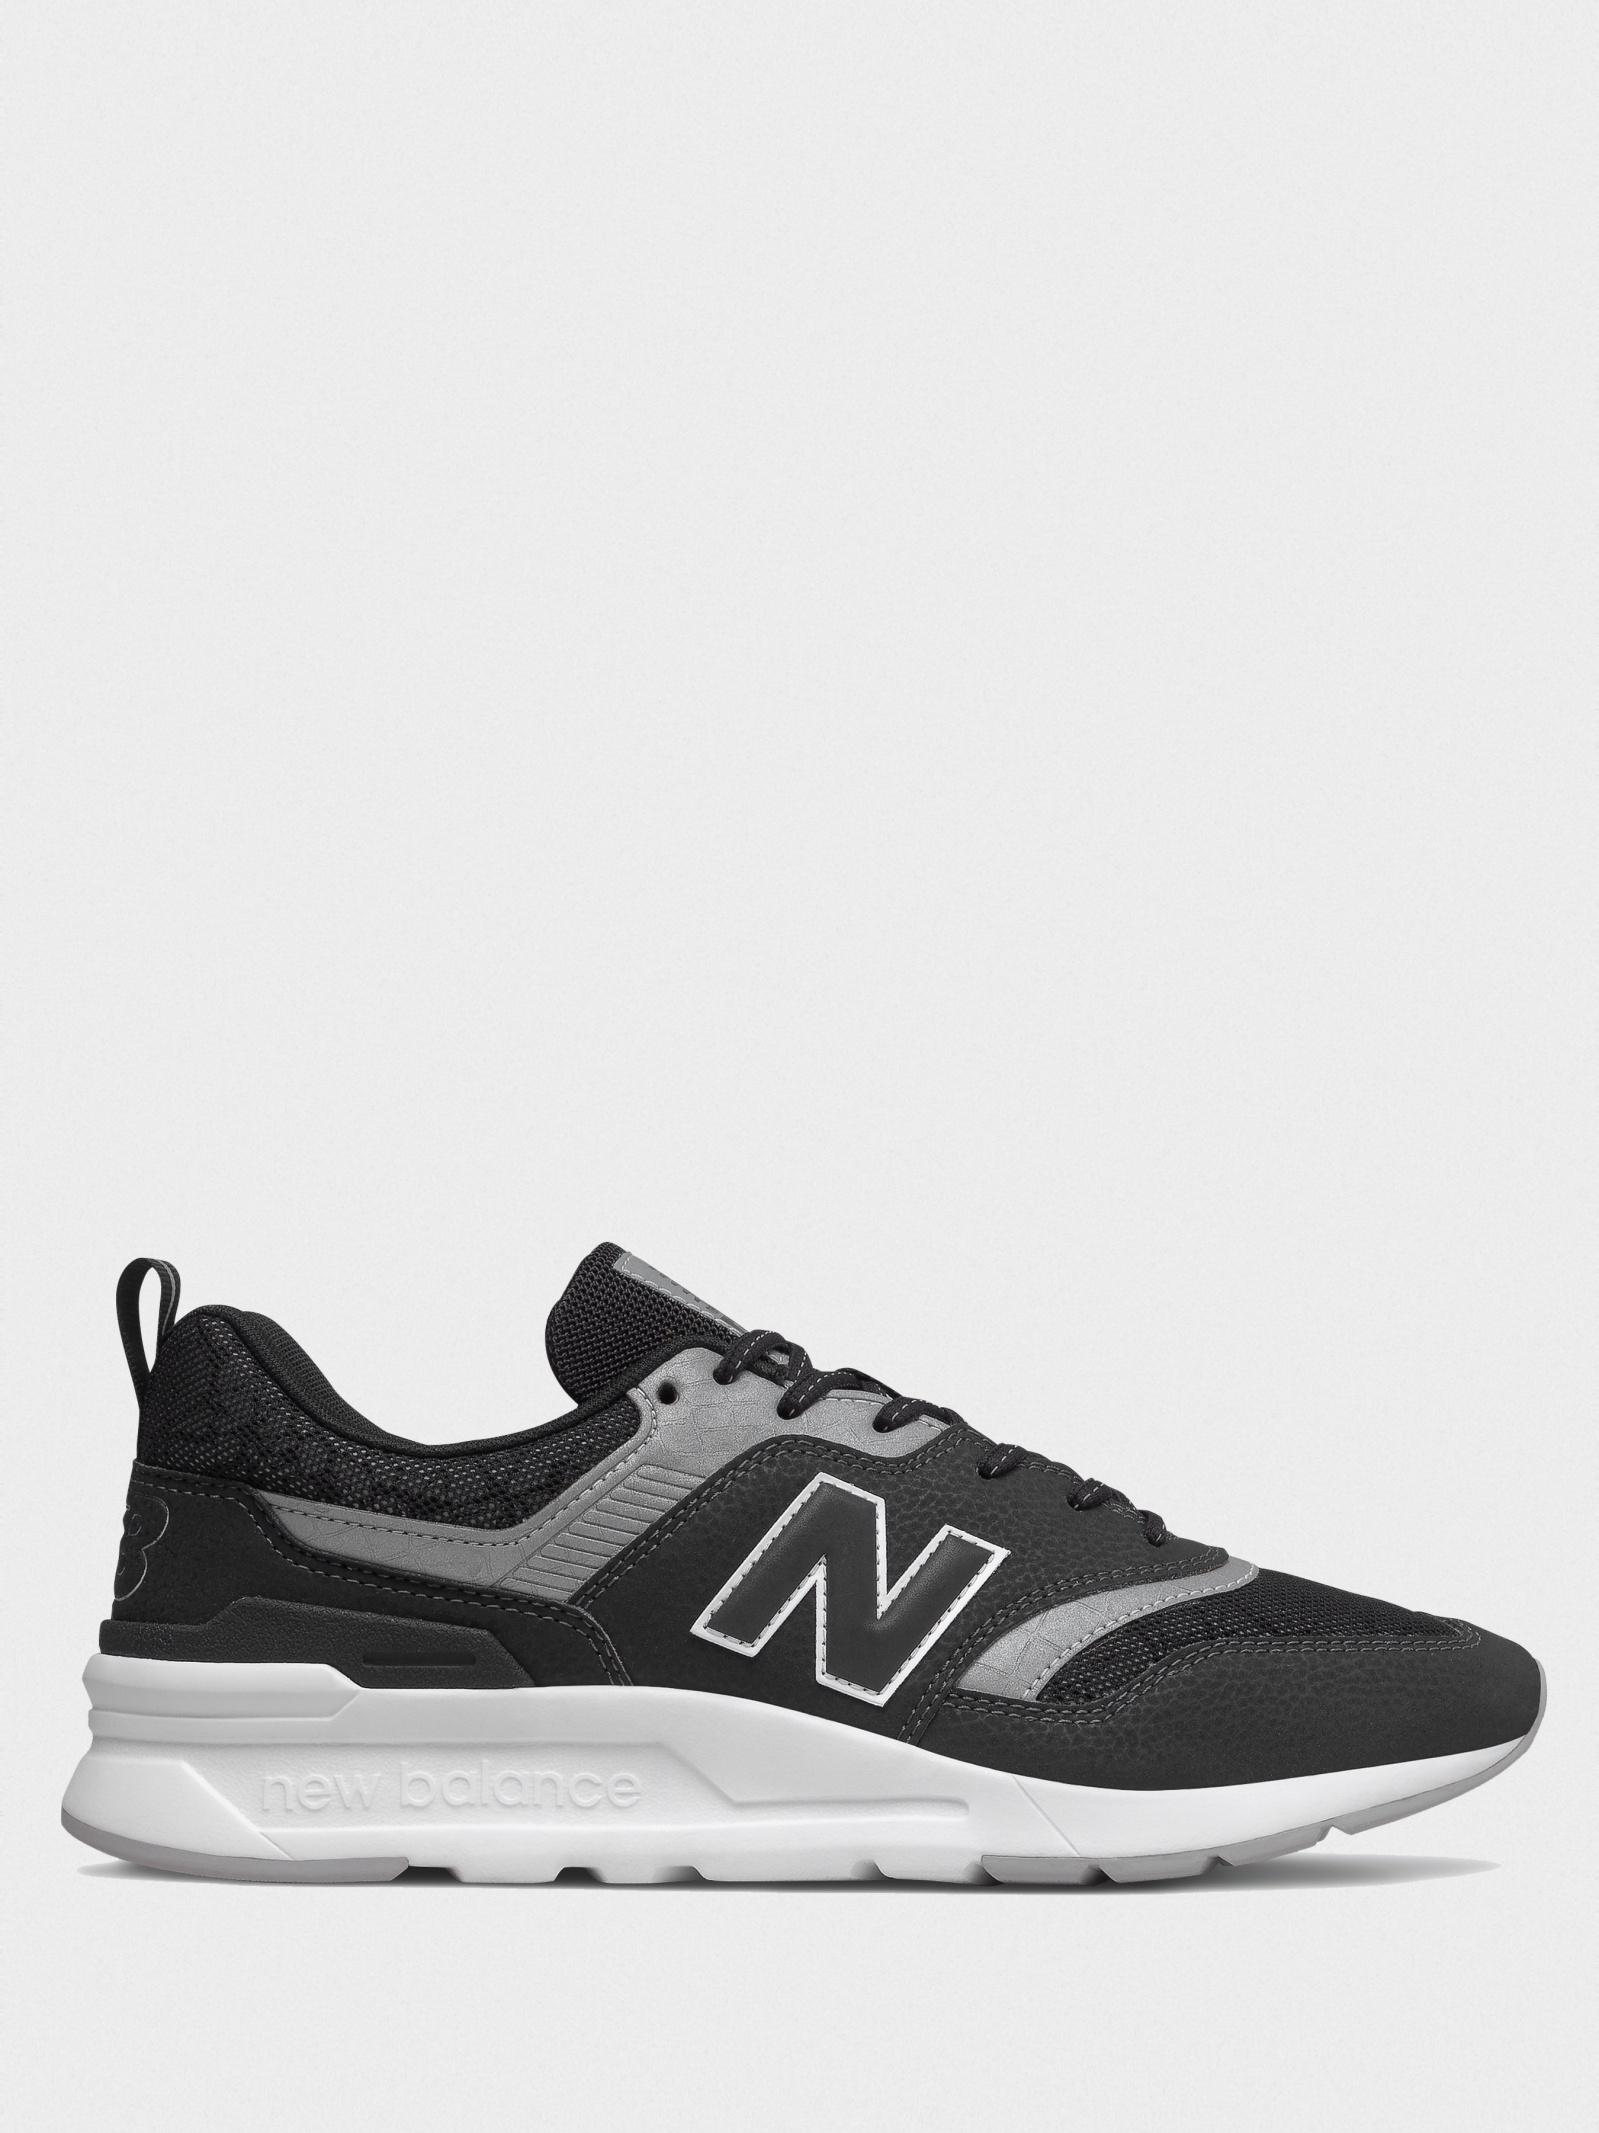 Кросівки New Balance 997H CM997HFI для чоловіків, колір: Чёрный ...